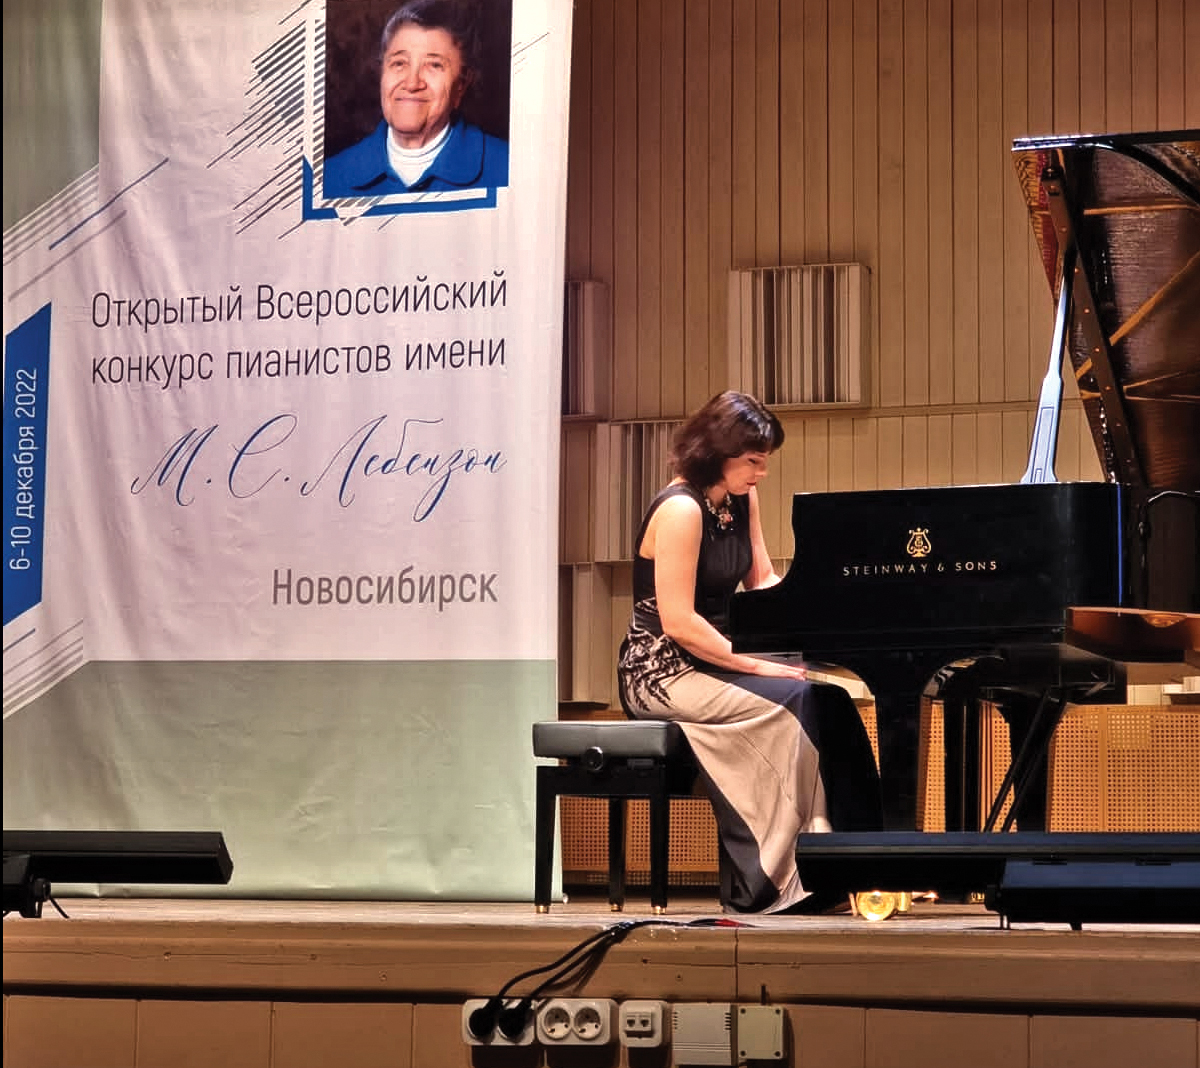 Открытый Всероссийский конкурс пианистов имени Мери Лебензон впервые проходит в Новосибирске